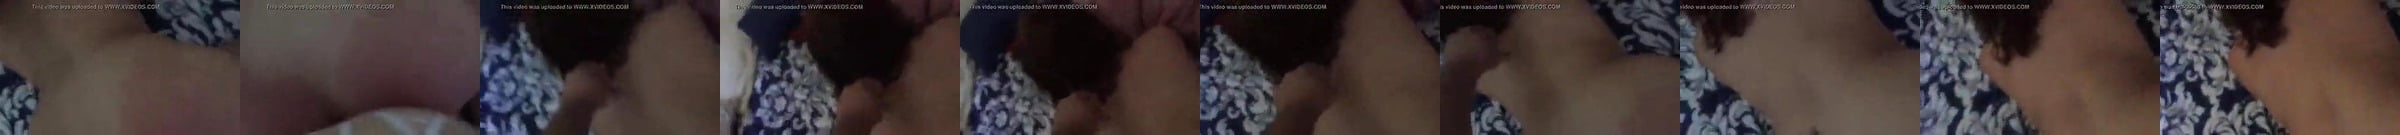 El Salvador Porn Videos Xhamster